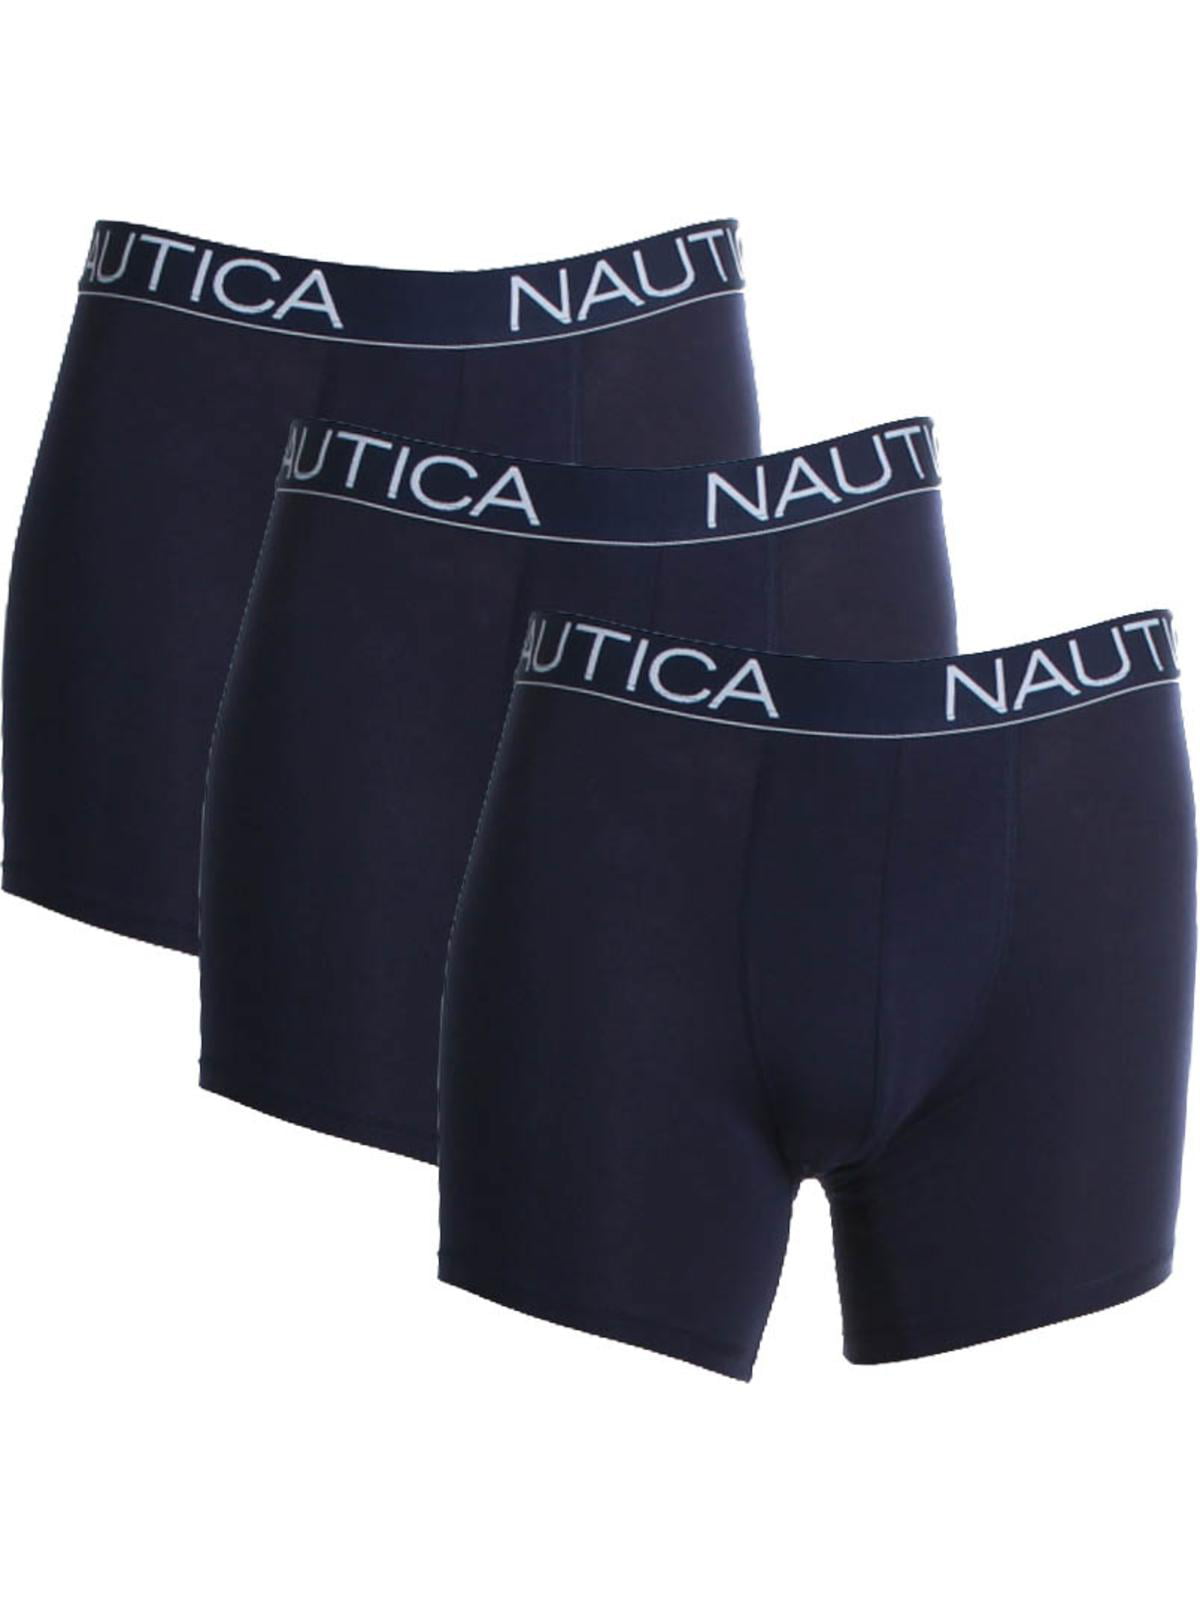 Nautica - Nautica Mens 3 Pack Tagless Boxer Briefs - Walmart.com ...